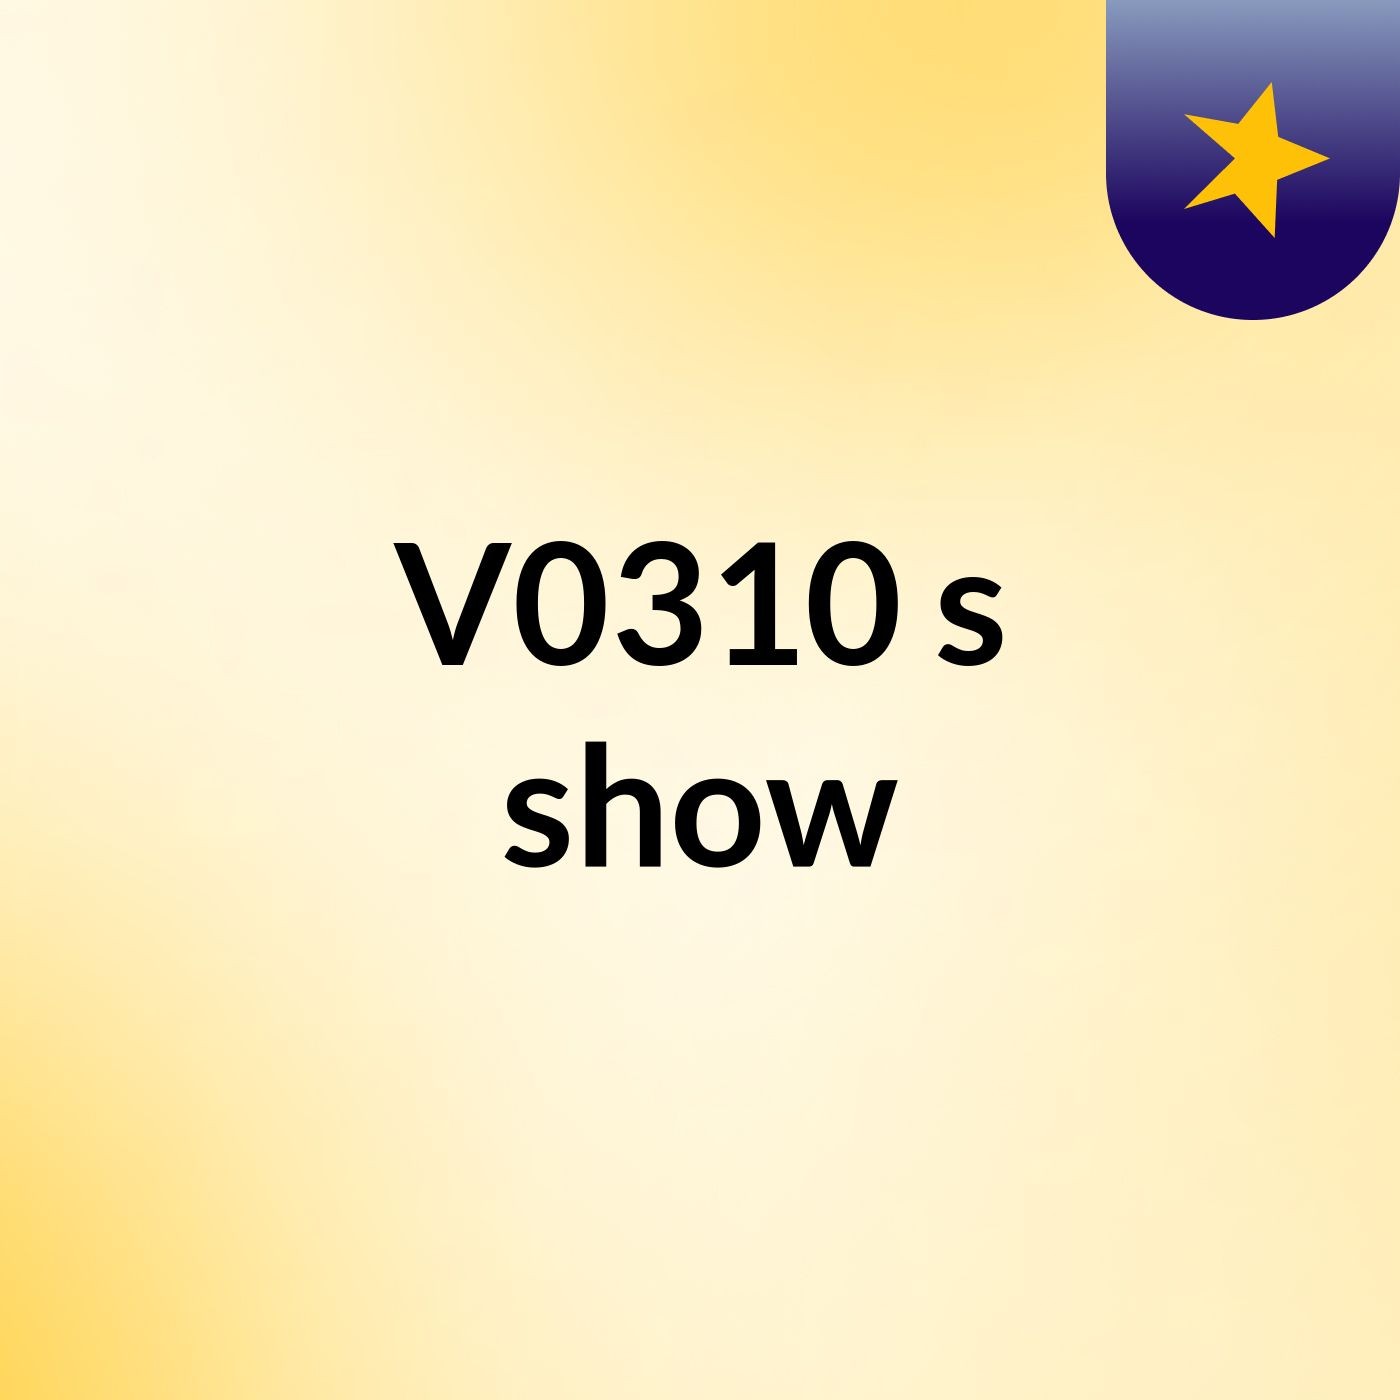 V0310's show